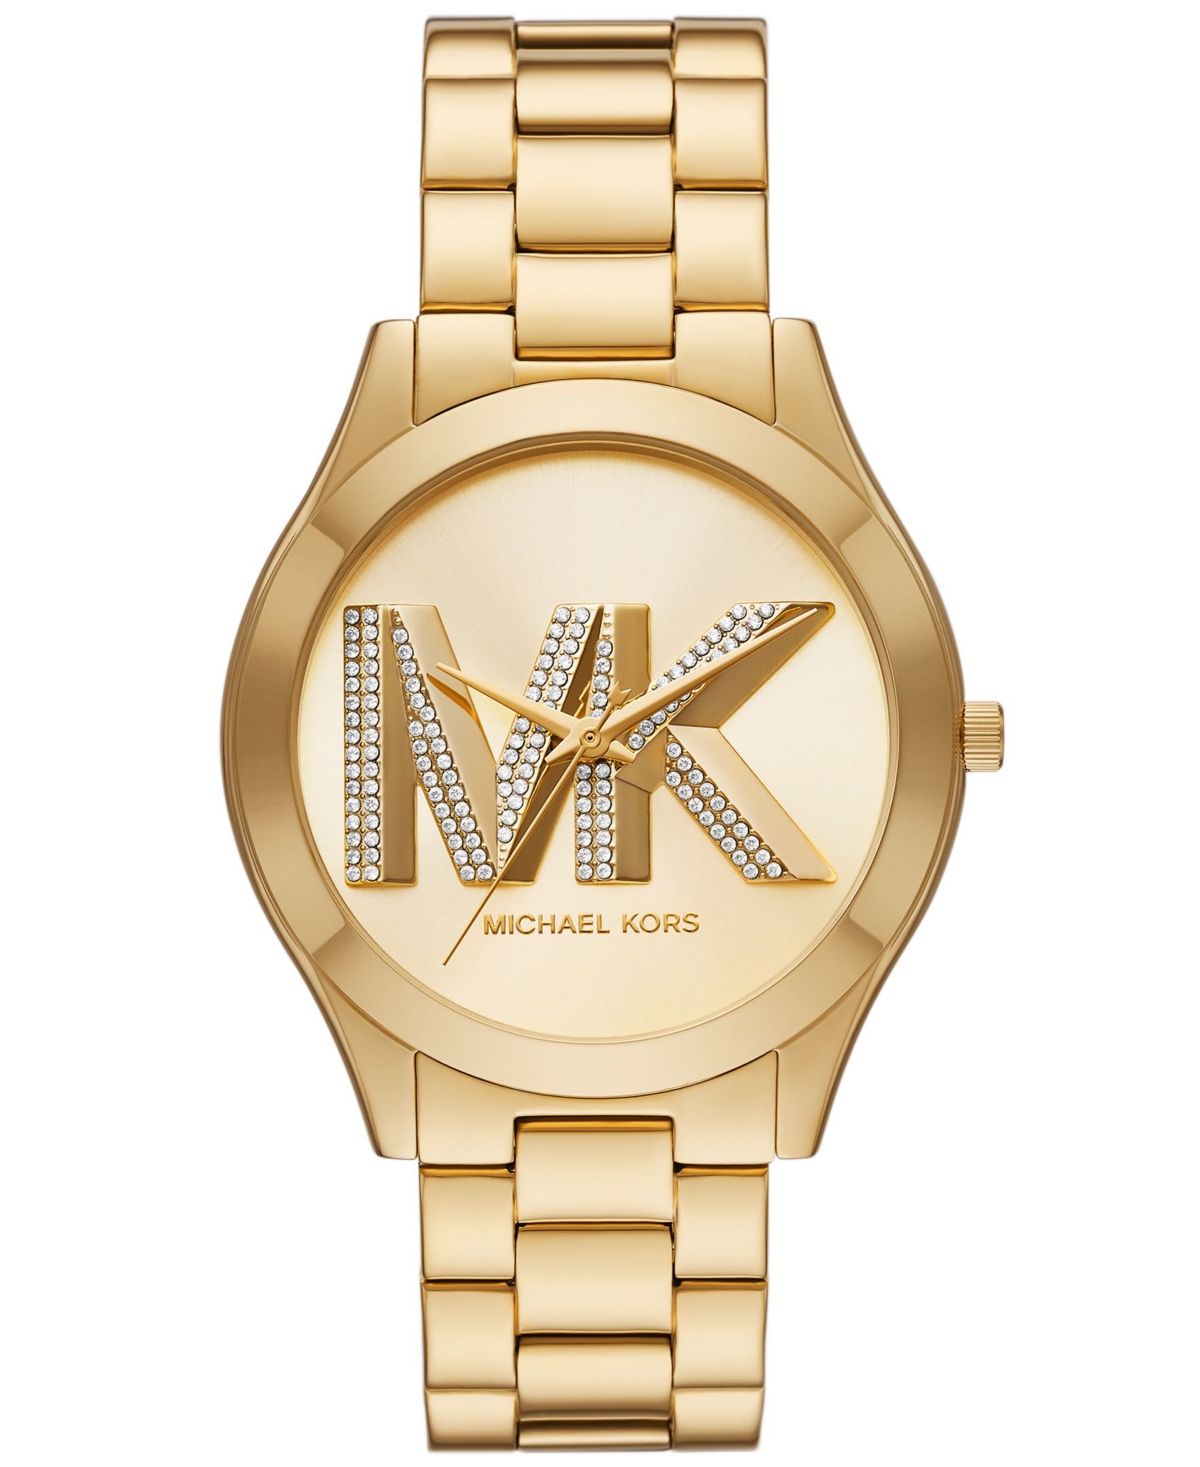 Michael Kors Women's Slim Runway Three-hand Gold-tone Stainless Steel Watch 42mm